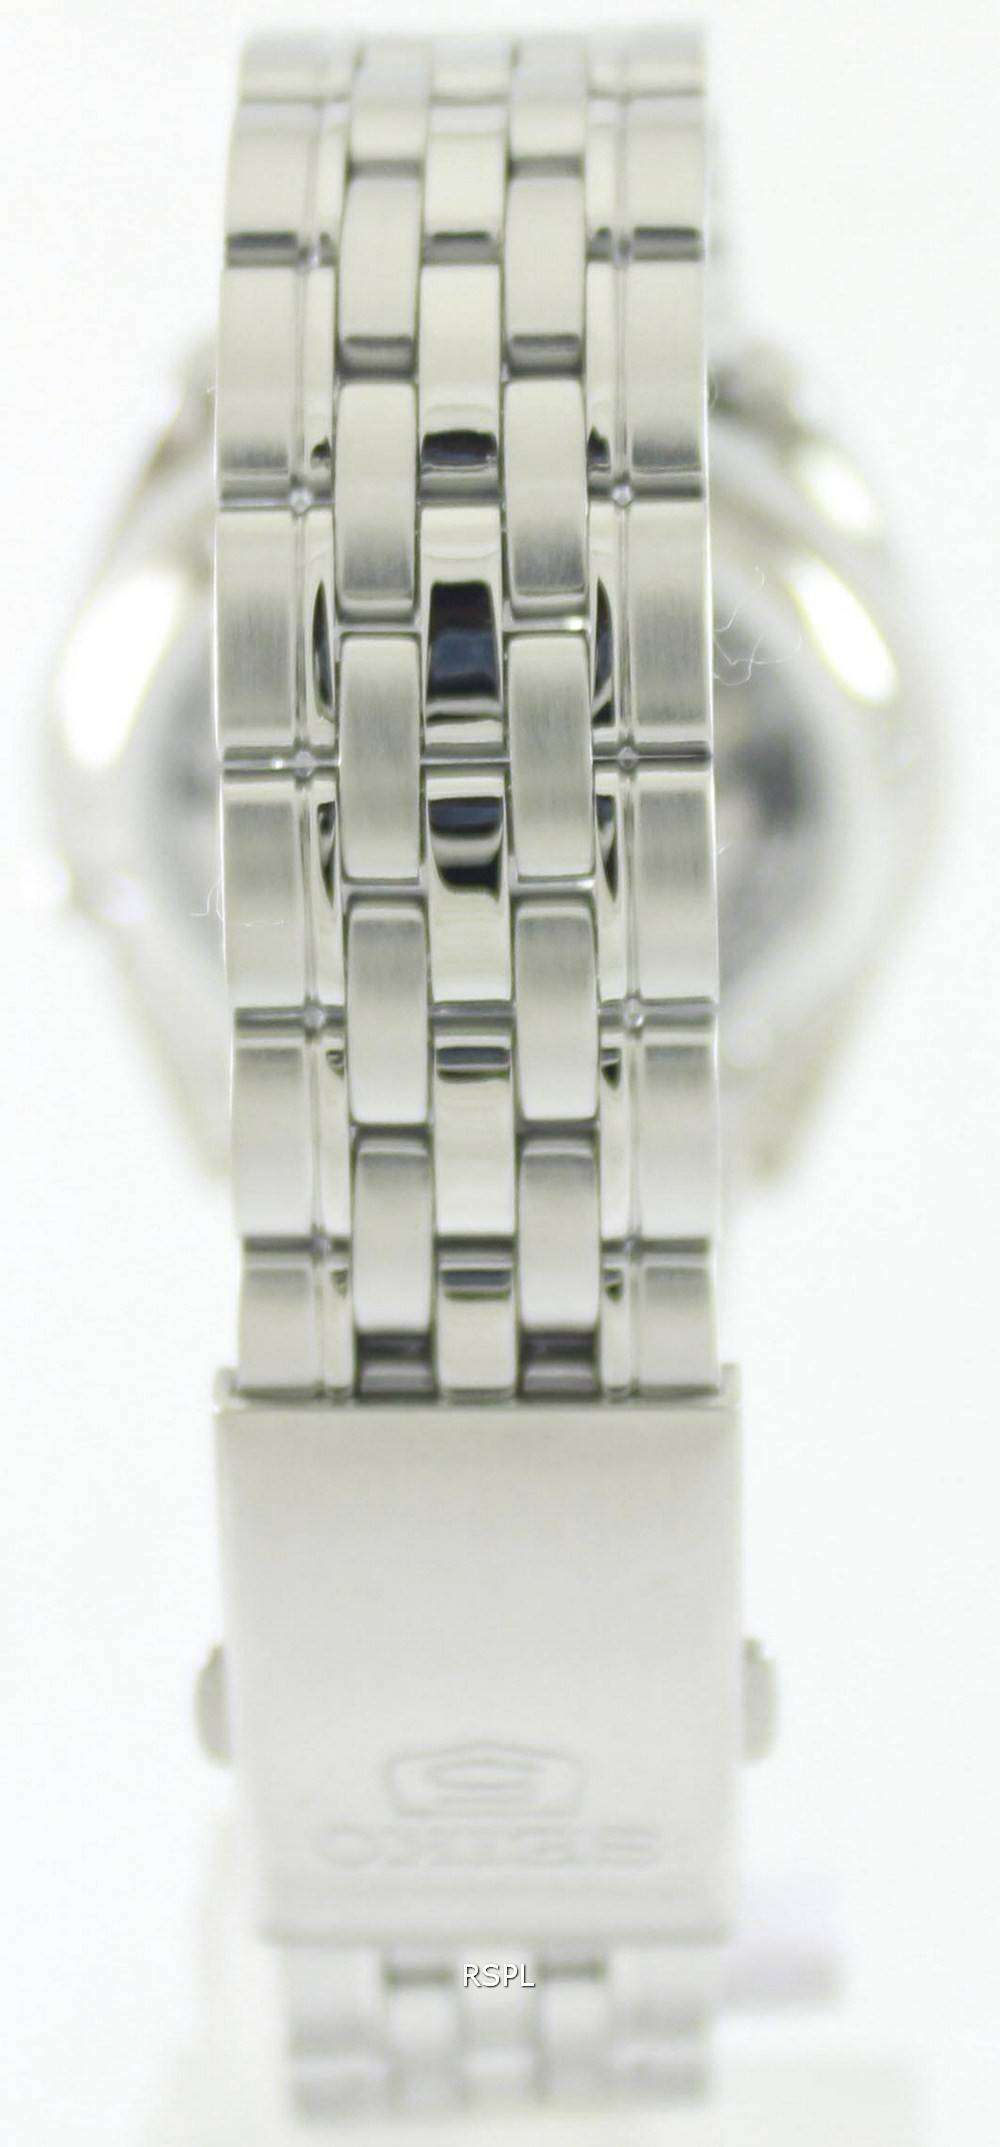 セイコー 5 自動 21 宝石 SNK393K1 SNK393K メンズ腕時計腕時計